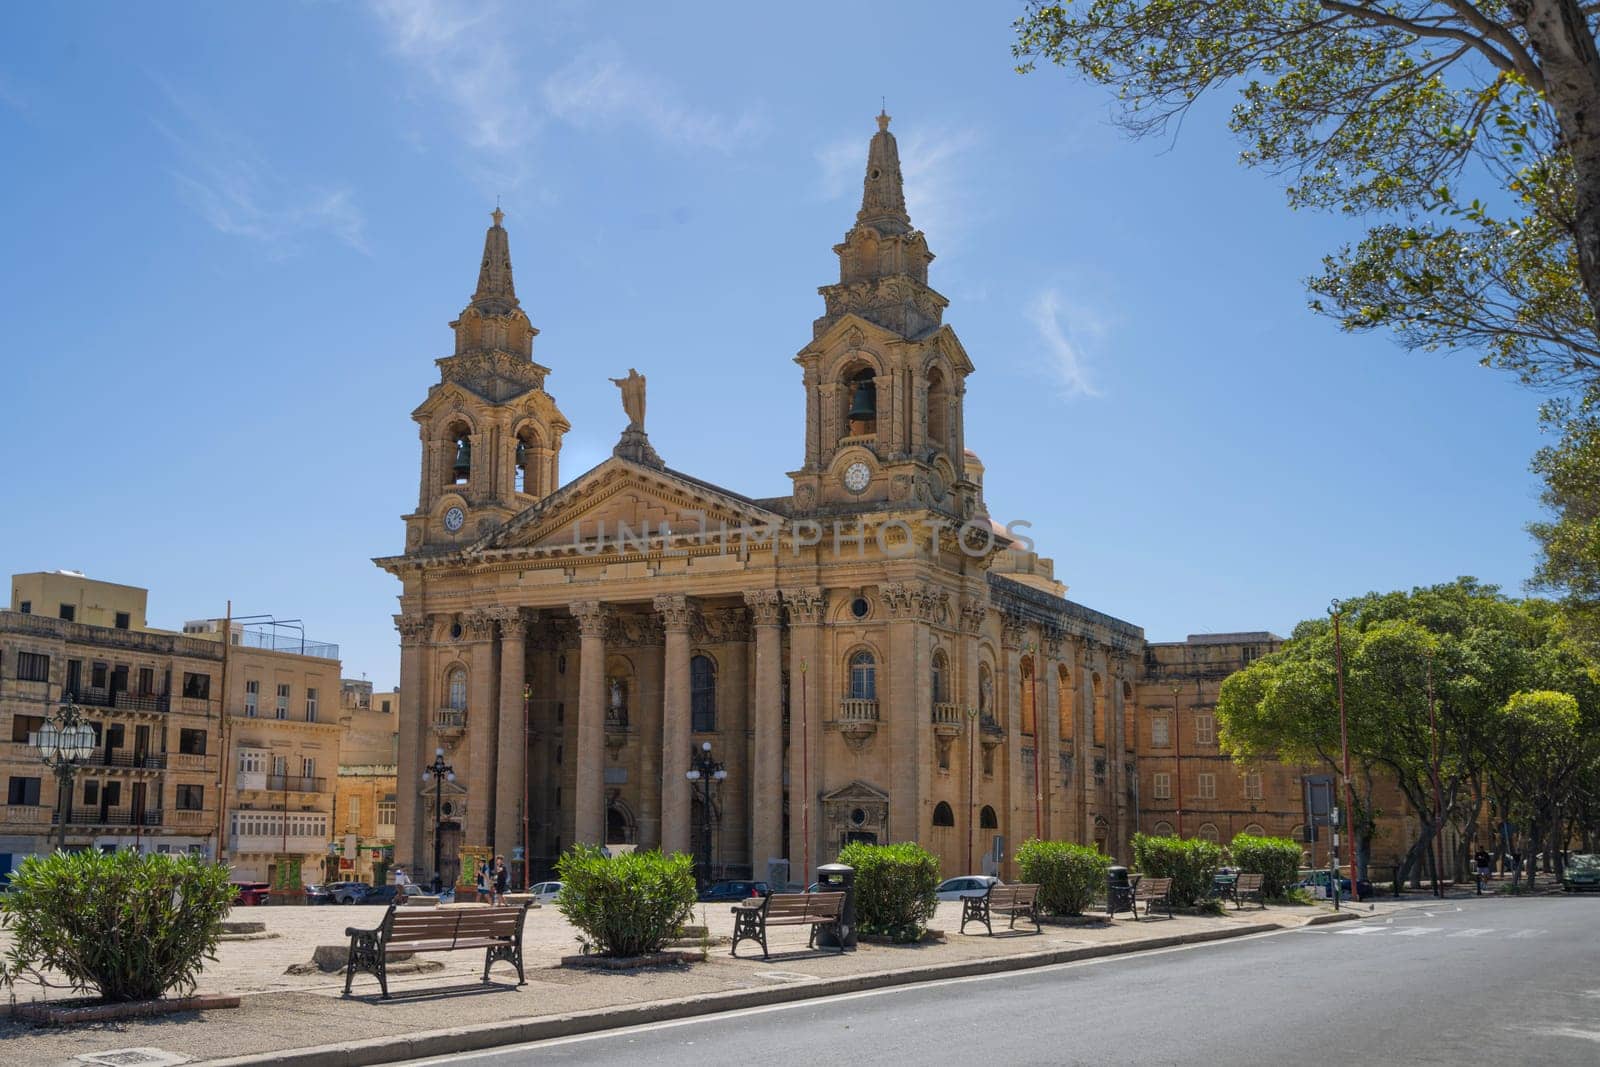 San Publiju church in Floriana, Malta by sergiodv